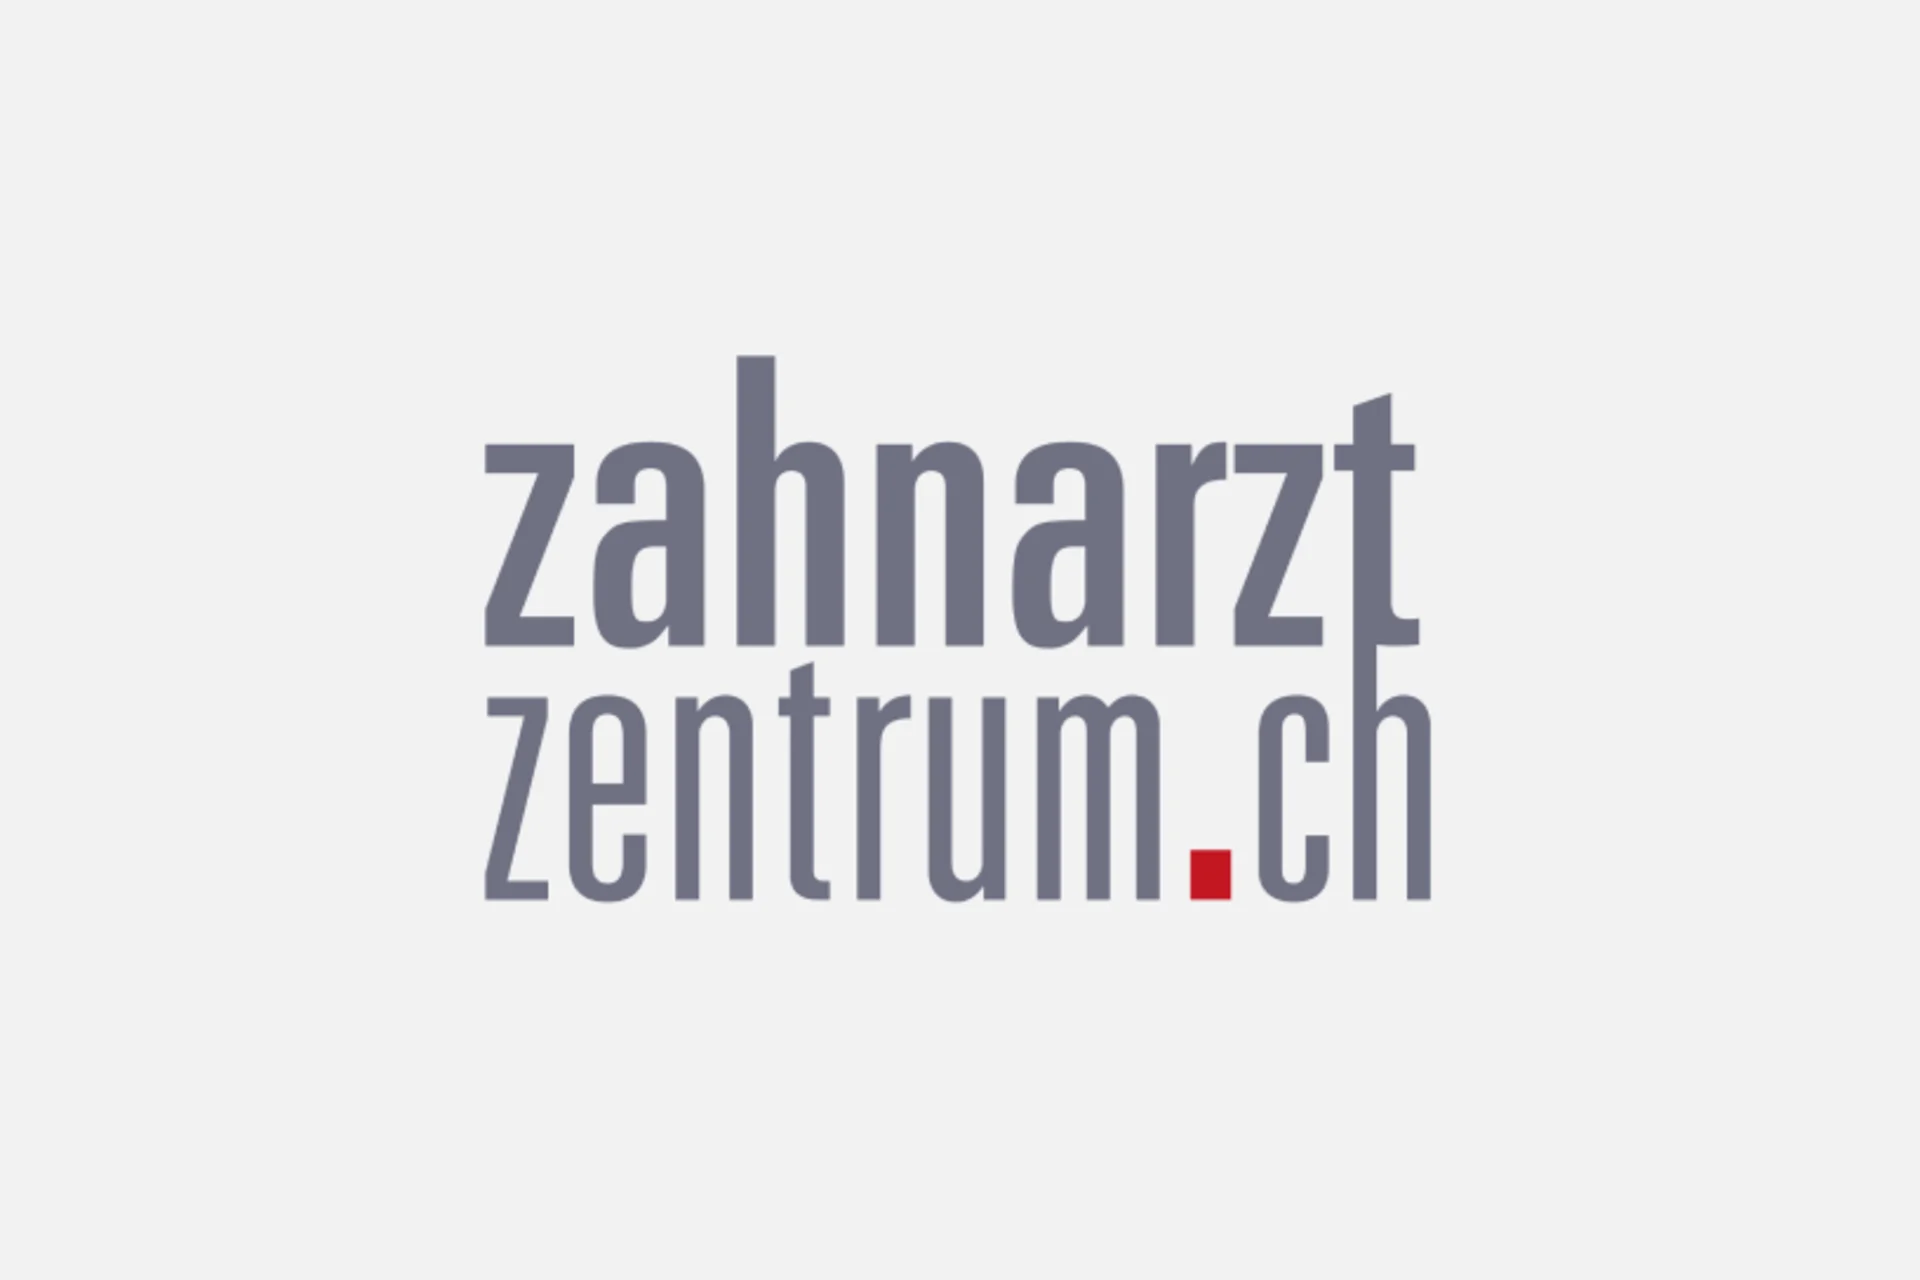 Logo du Zahnarztzentrum.ch